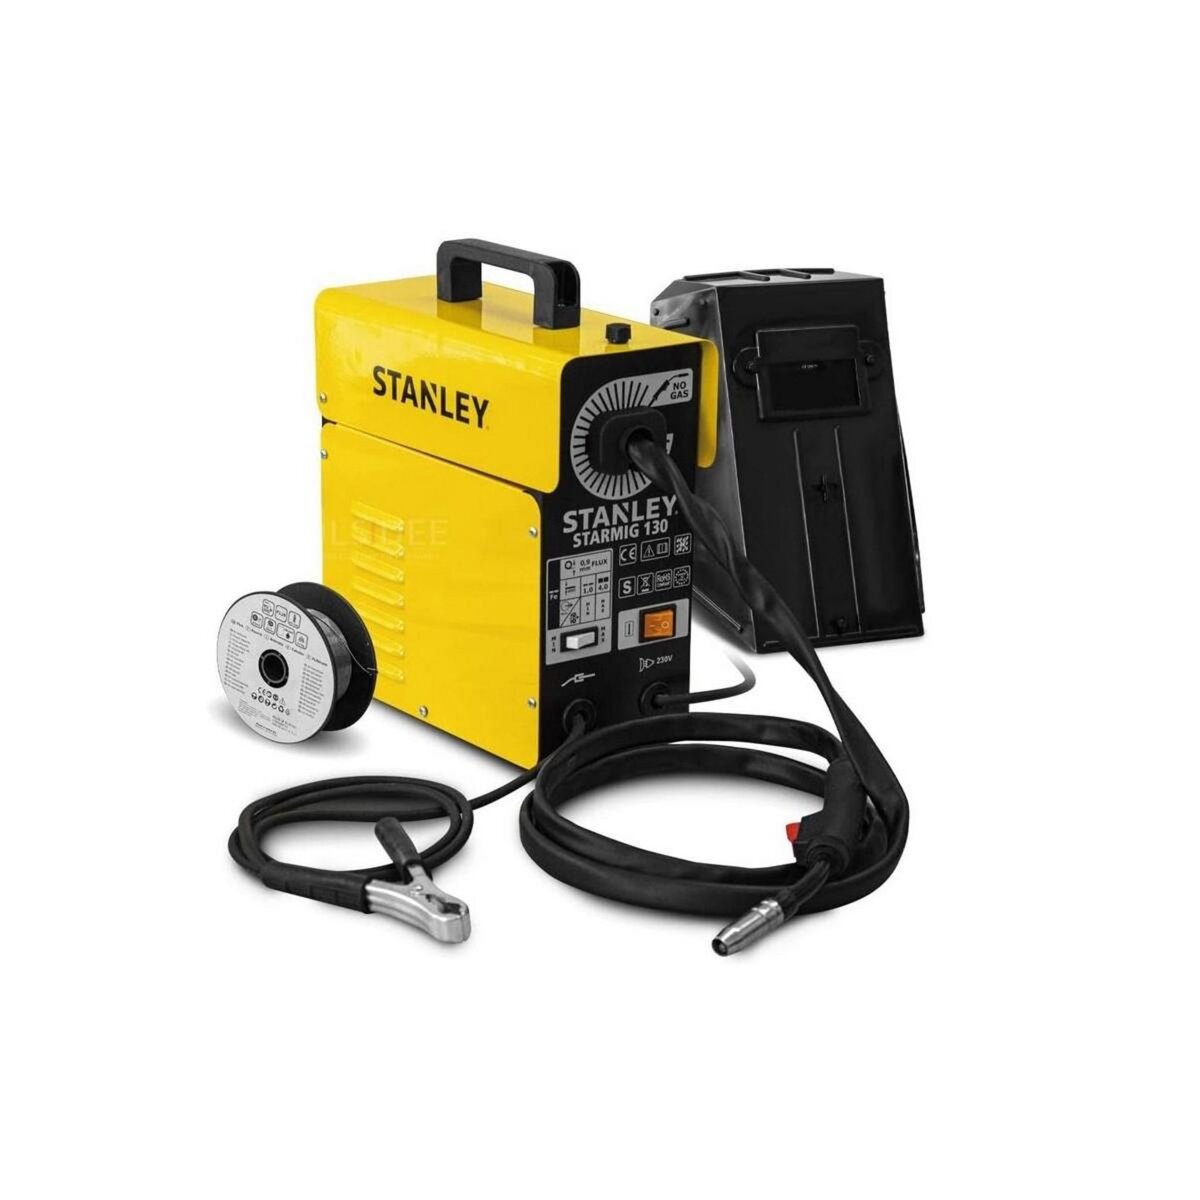 Stanley Poste à souder Mig Sans gaz STARMIG130 Régulation Automatique du fil STANLEY